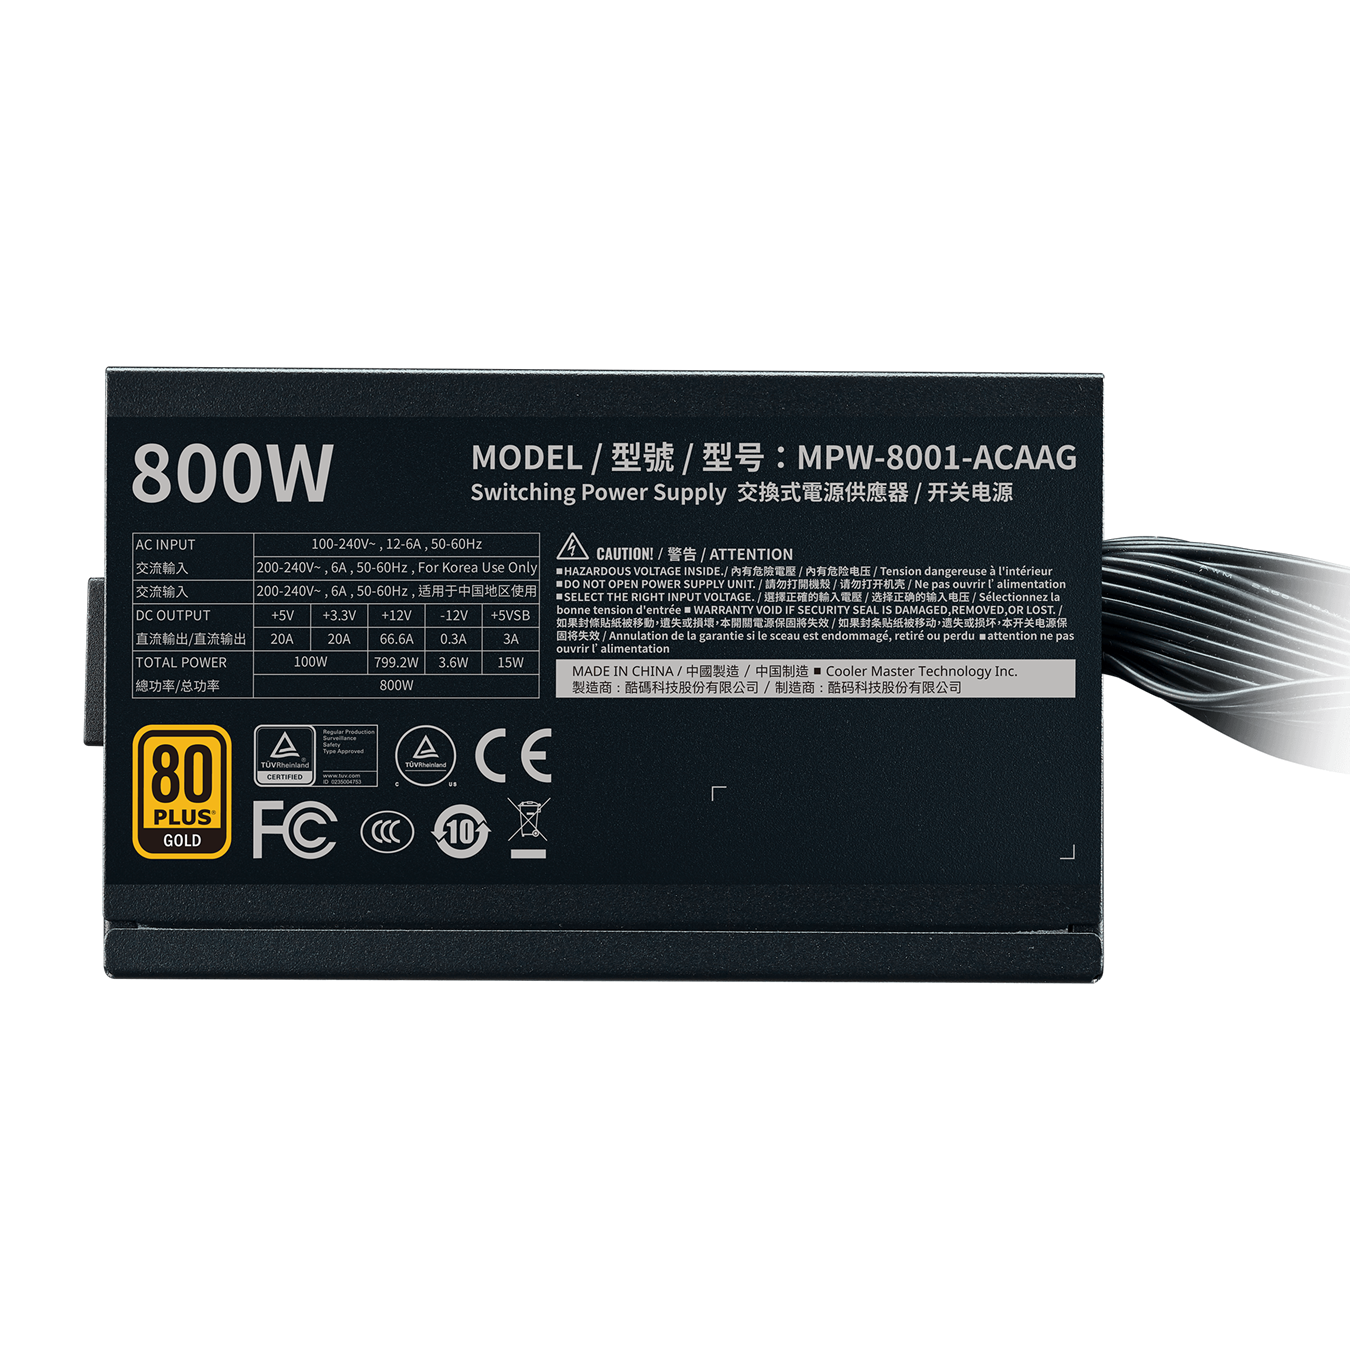 G800 Gold - 5 Year Warranty